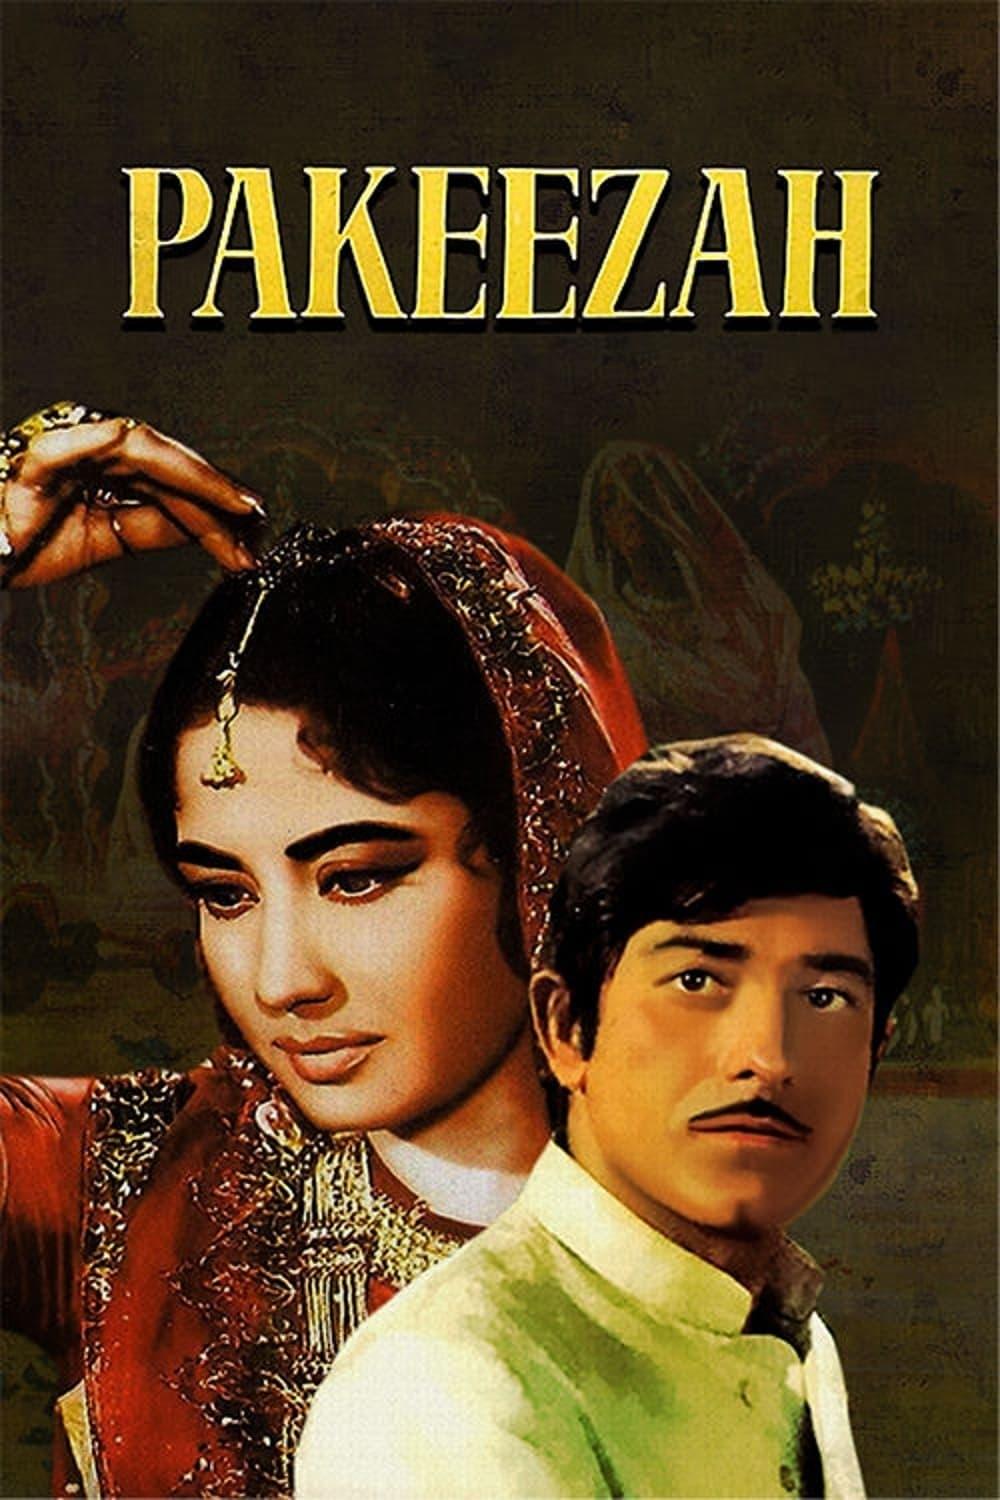 Pakeezah poster